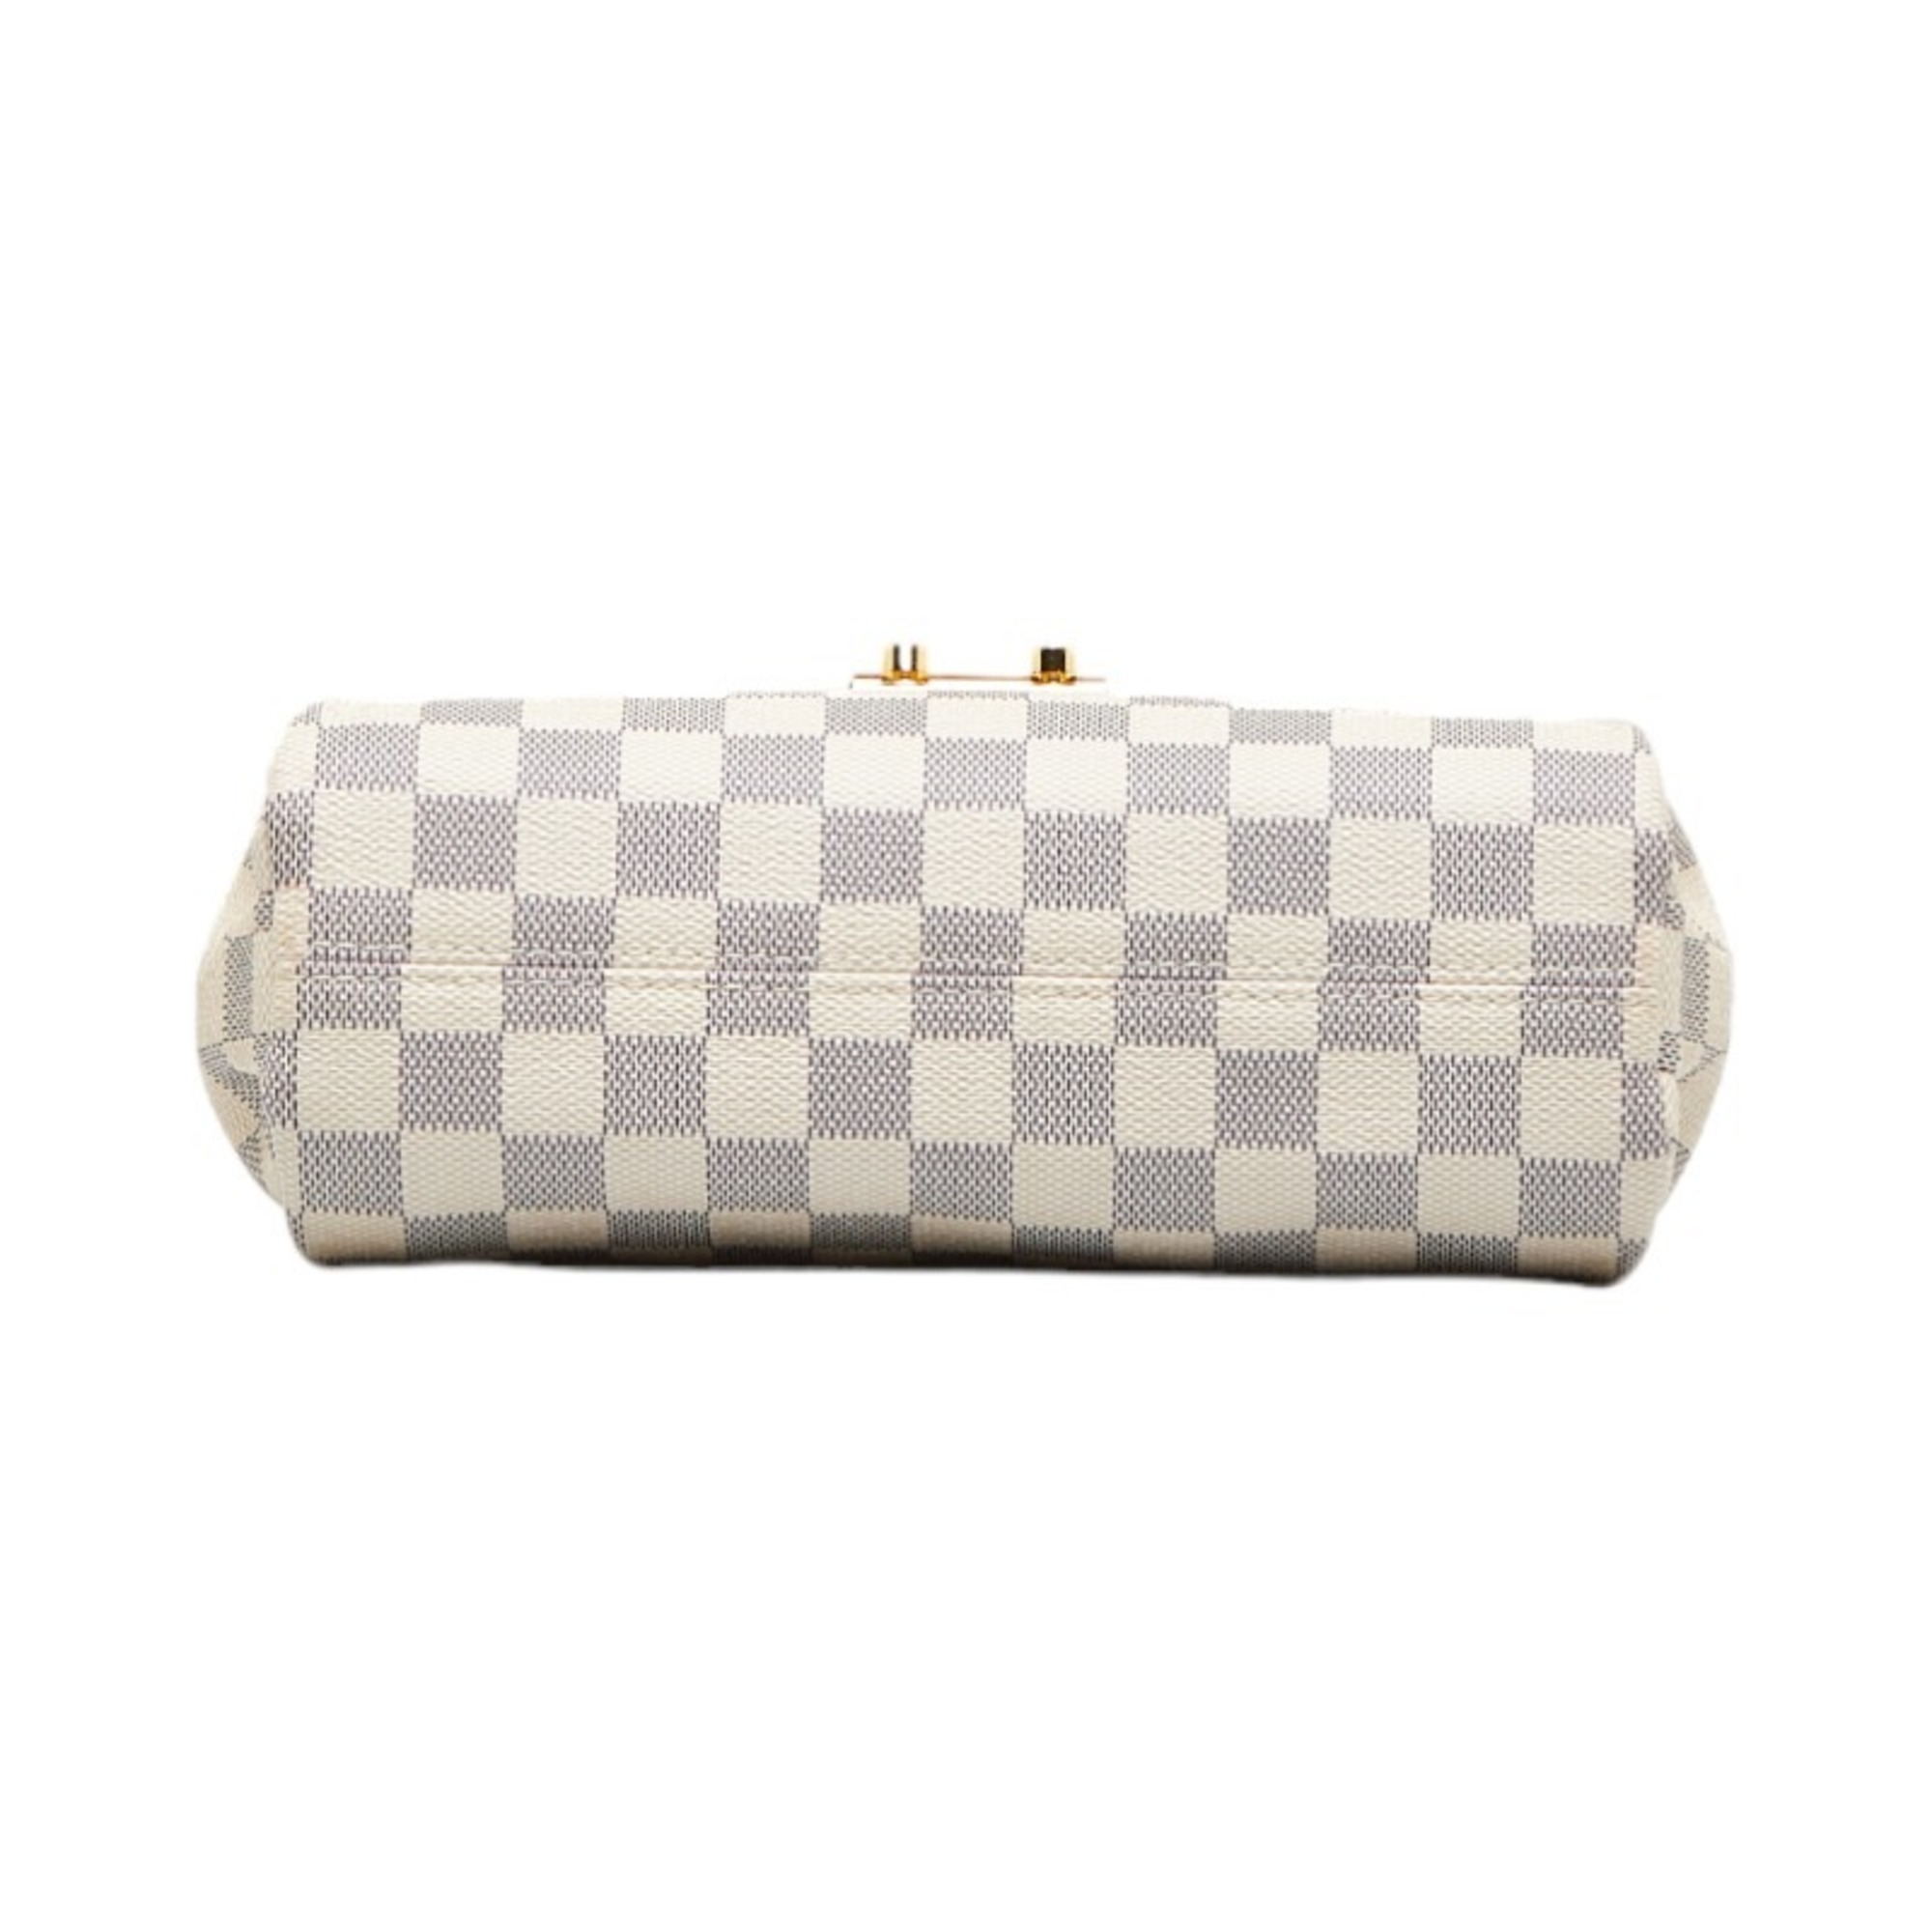 Louis Vuitton Damier Azur Croisette Handbag Shoulder Bag N41581 White PVC Leather Women's LOUIS VUITTON